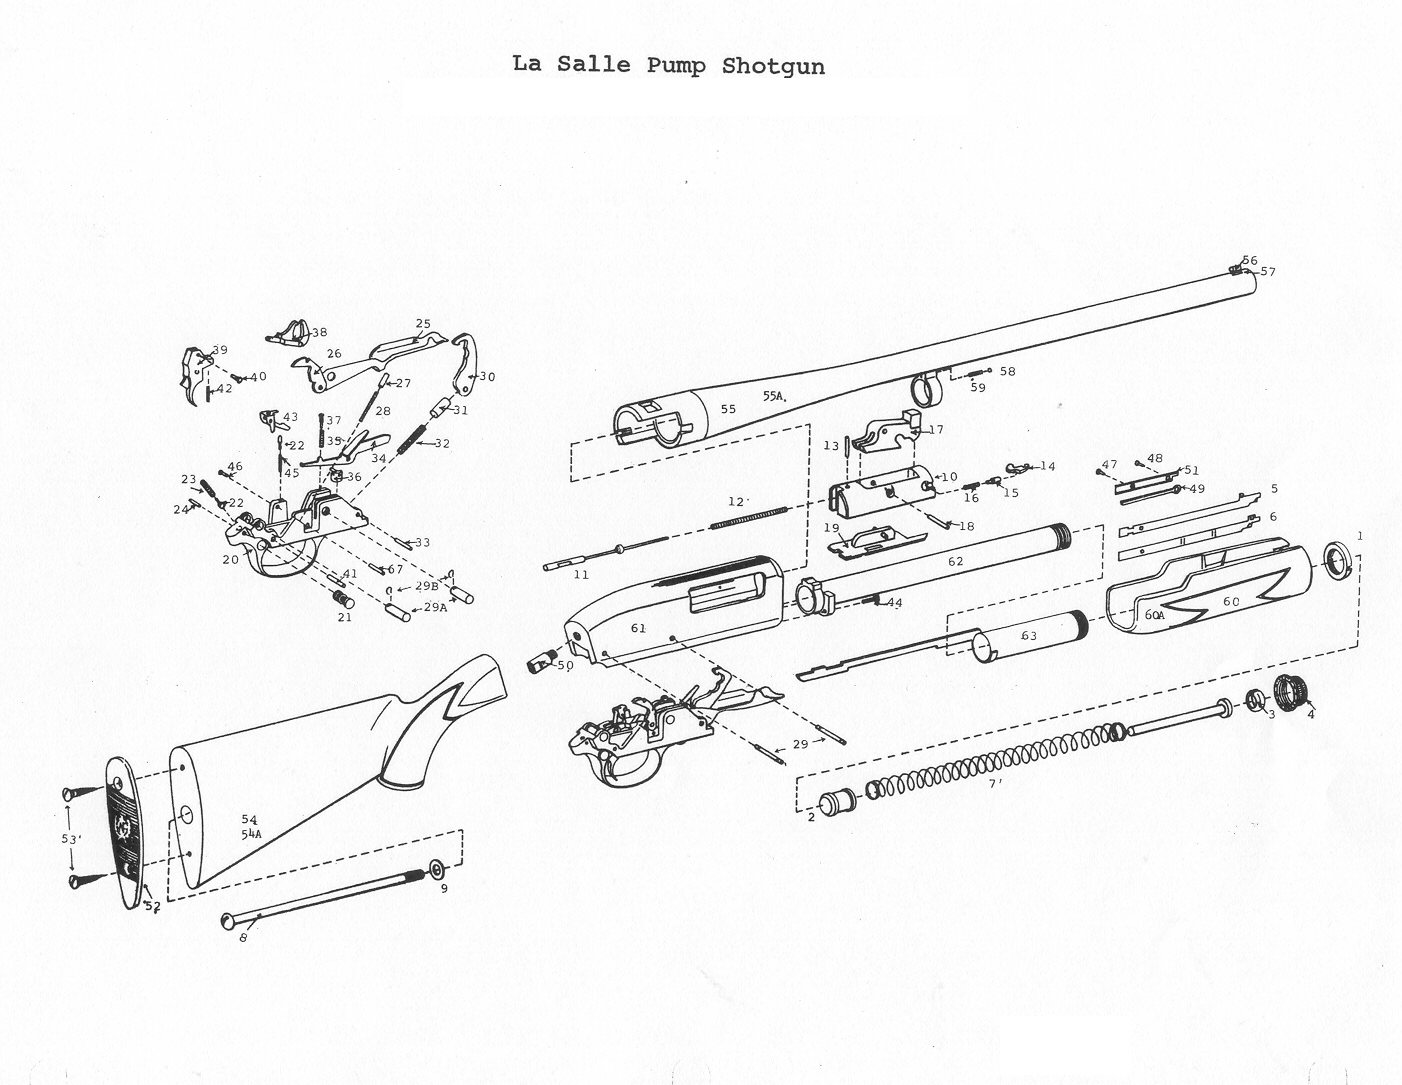 Parts Of A Pump Shotgun